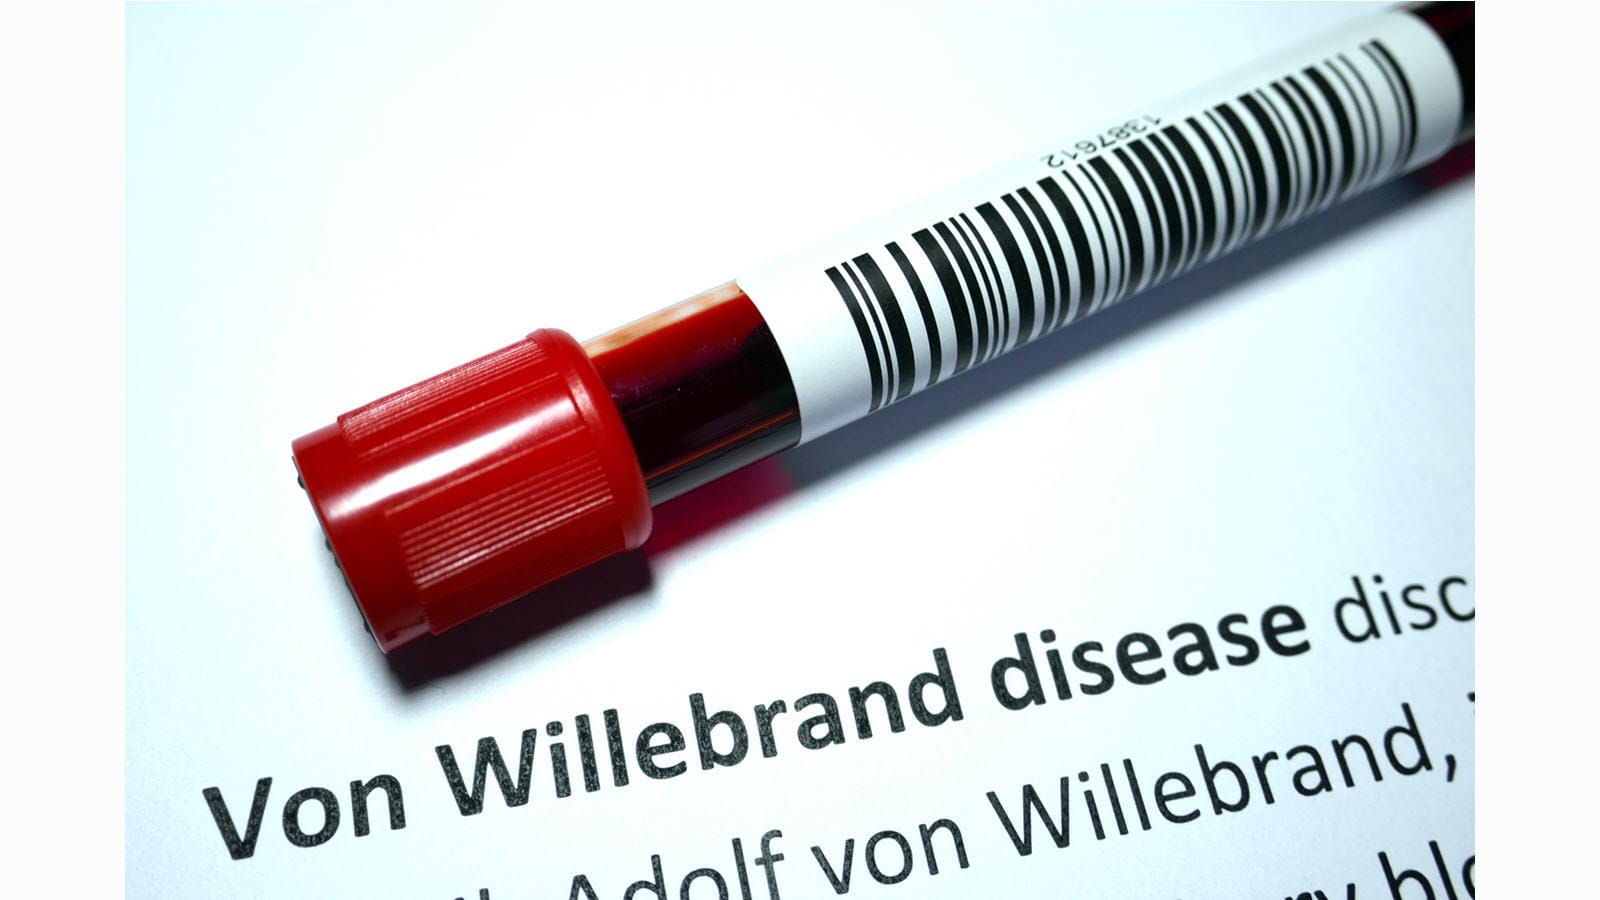 Blood sample - von Willebrand Disease